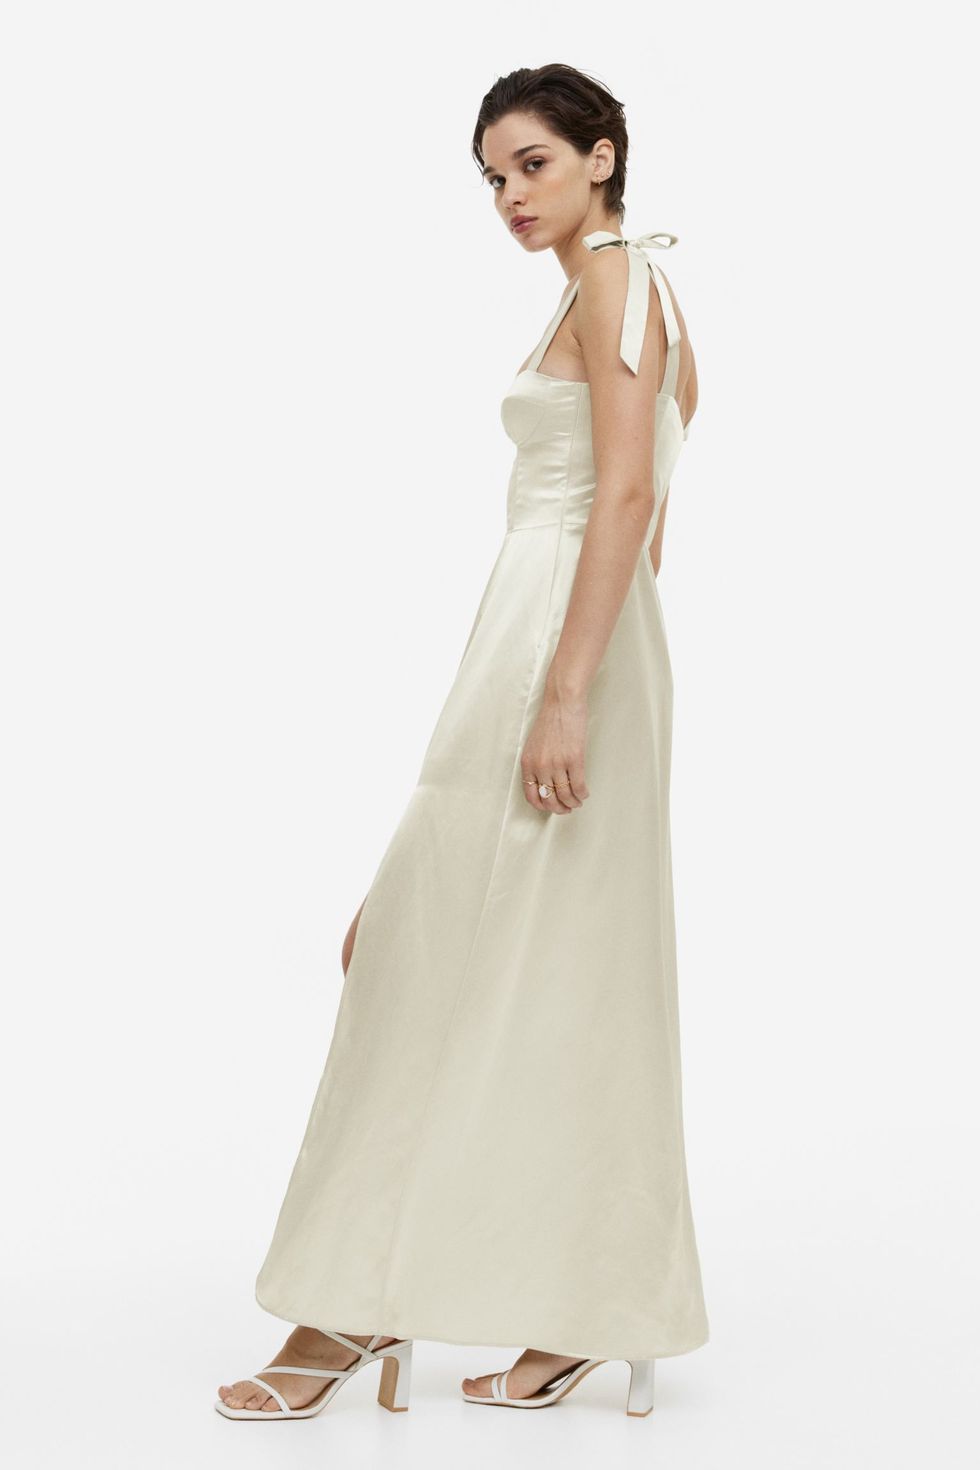 El vestido de novia de 39 € de H&M que ha colapsado la logística y sueca